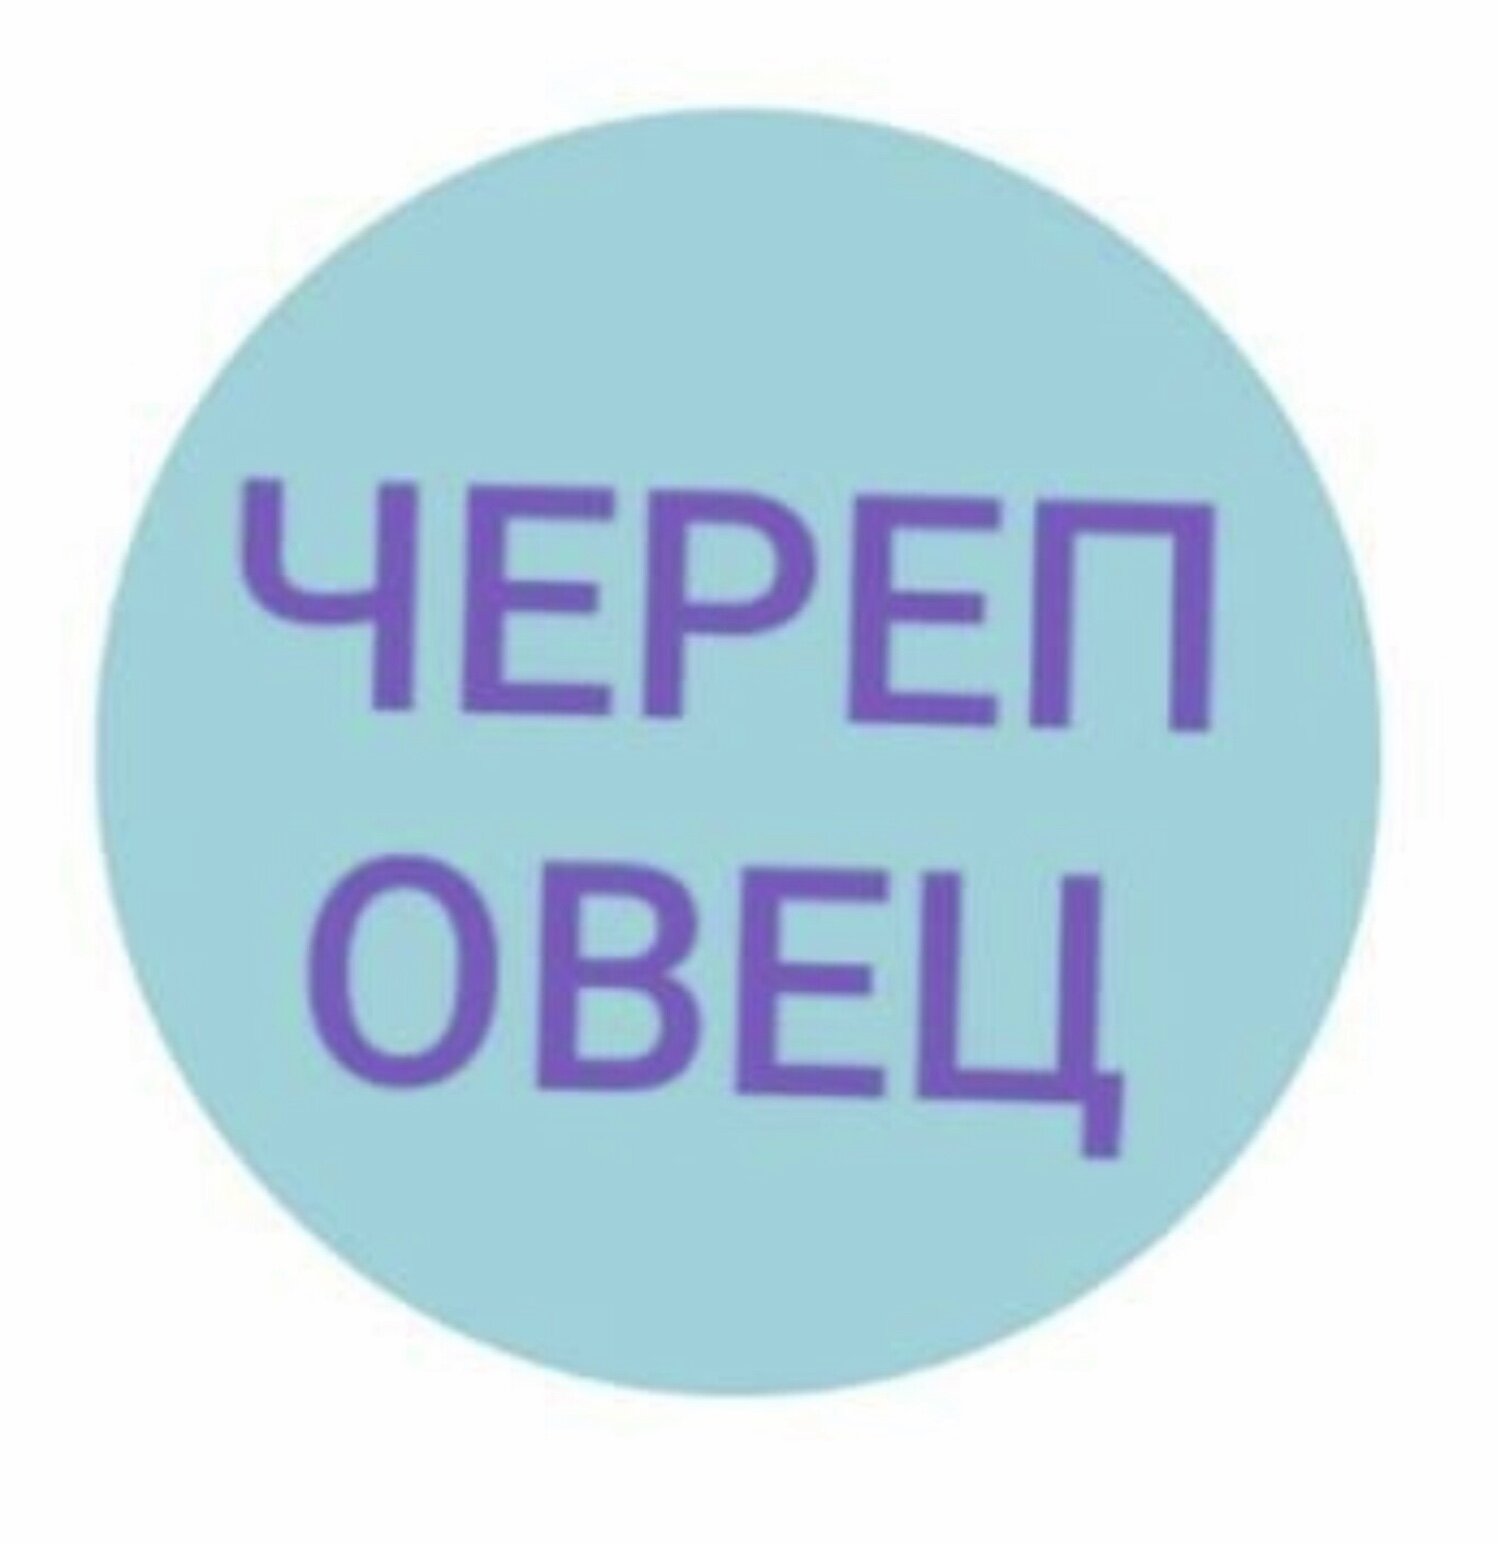 О интернет! Ты - Сила! или как отреагировали люди на новый логотип СПб